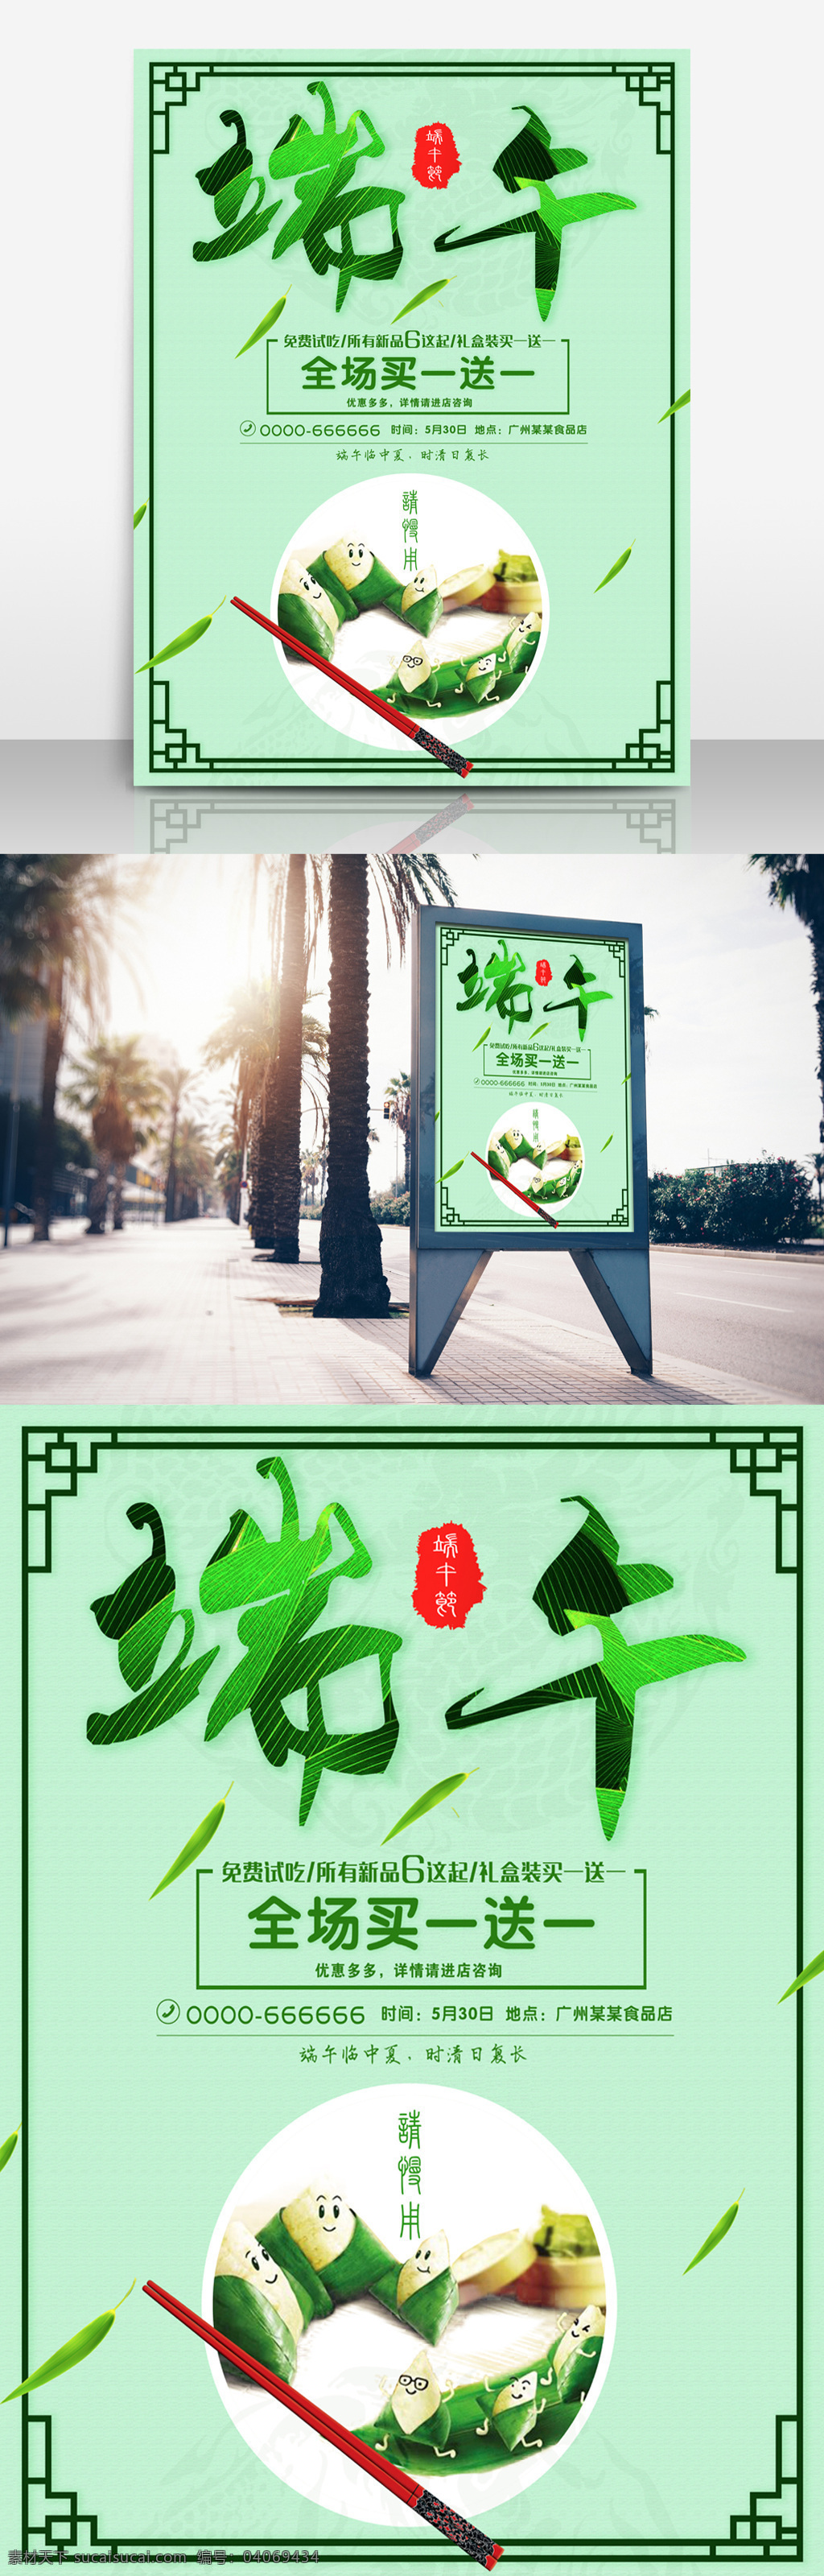 绿色 五月 端午节 端午 促销 海报 节日促销海报 中式边框 筷子 节日 粽子 海报促销 节日海报